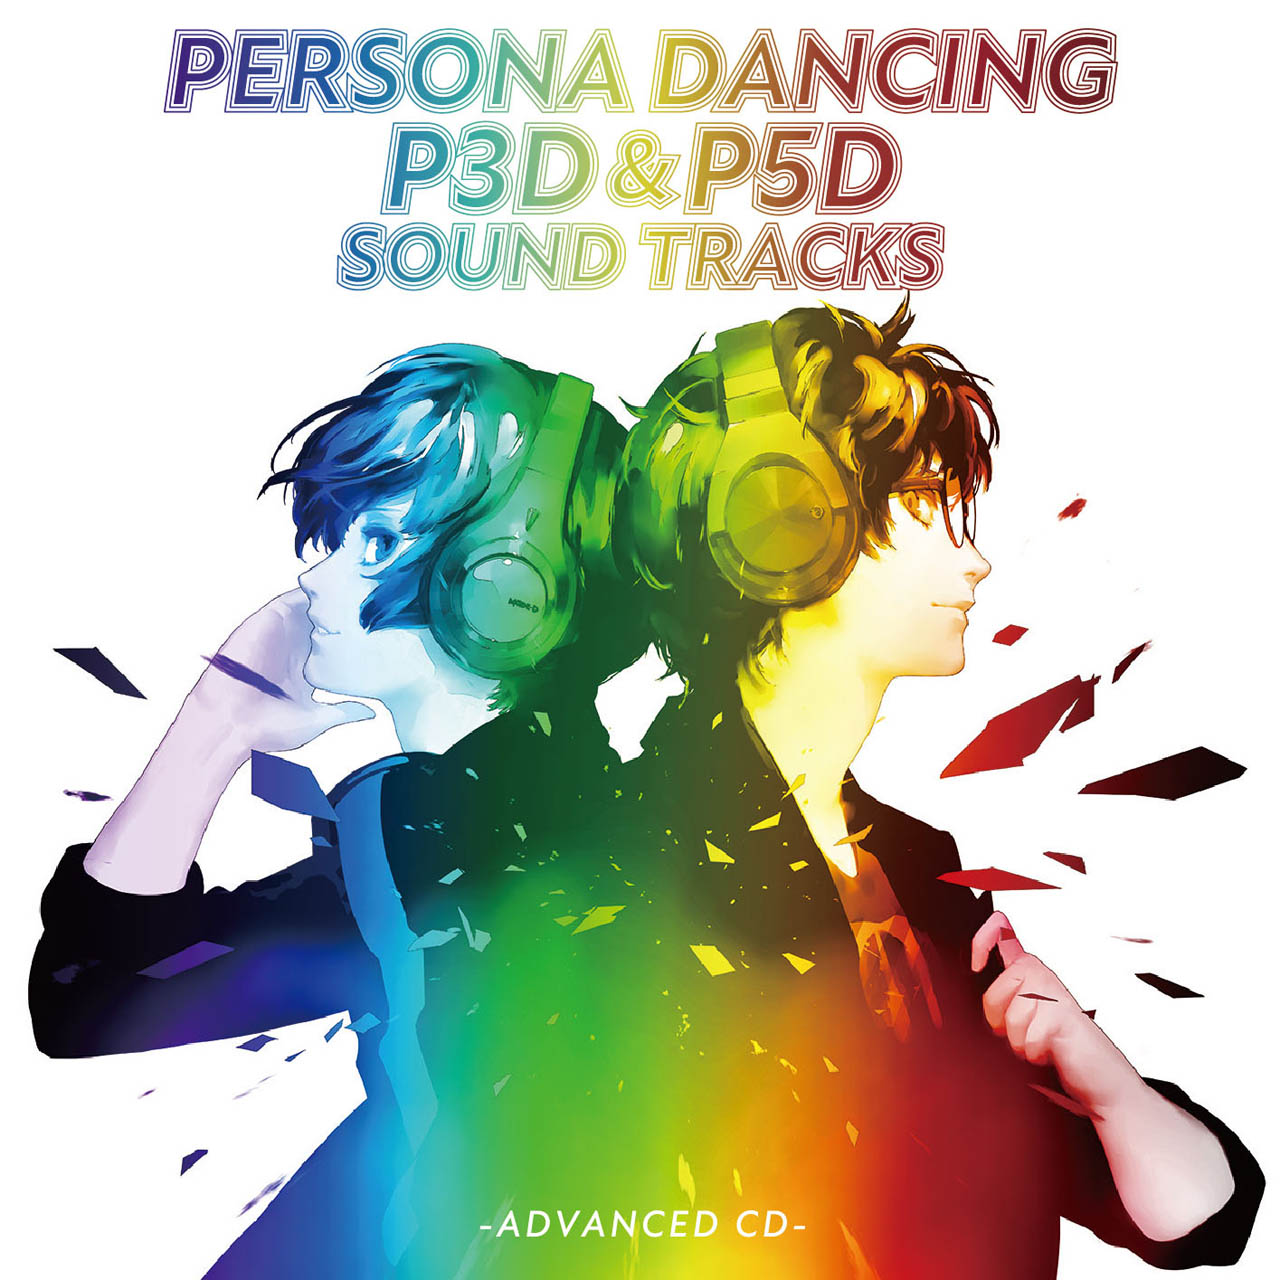 「ペルソナ3 ダンシング・ムーンナイト」と「ペルソナ5 ダンシング・スターナイト」のサウンドトラックCDが6月24日にリリース。さまざまな特典を同梱した初回限定生産盤も用意